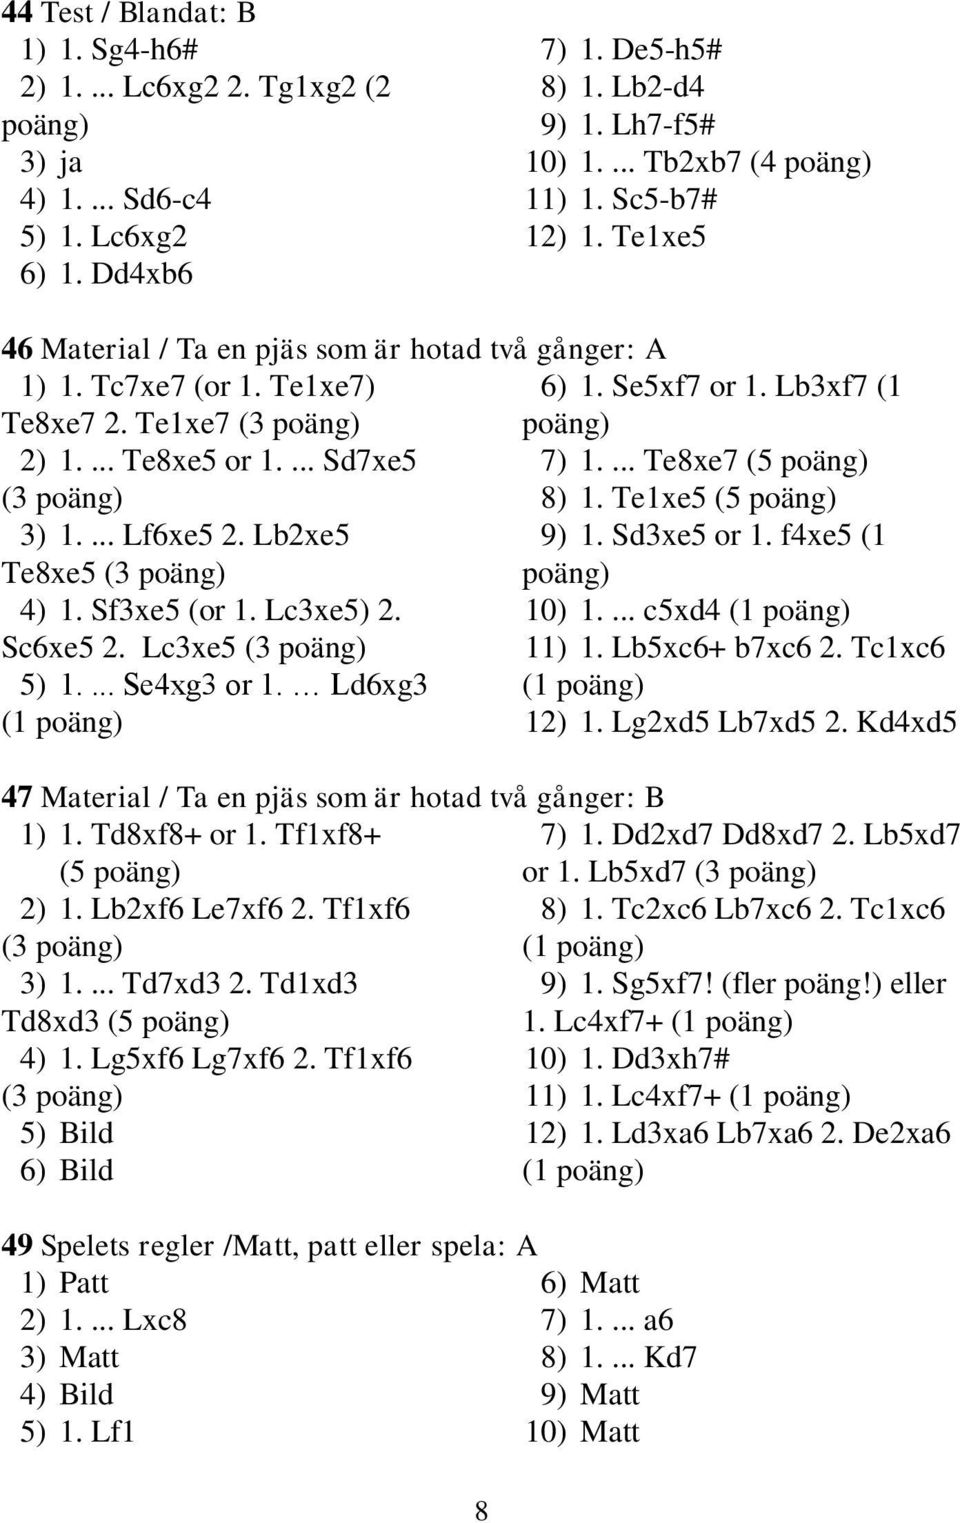 ... Te8xe7 (5 poäng) (3 poäng) 8) 1. Te1xe5 (5 poäng) 3) 1.... Lf6xe5 2. Lb2xe5 9) 1. Sd3xe5 or 1. f4xe5 (1 Te8xe5 (3 poäng) poäng) 4) 1. Sf3xe5 (or 1. Lc3xe5) 2. 10) 1.... c5xd4 (1 poäng) Sc6xe5 2.